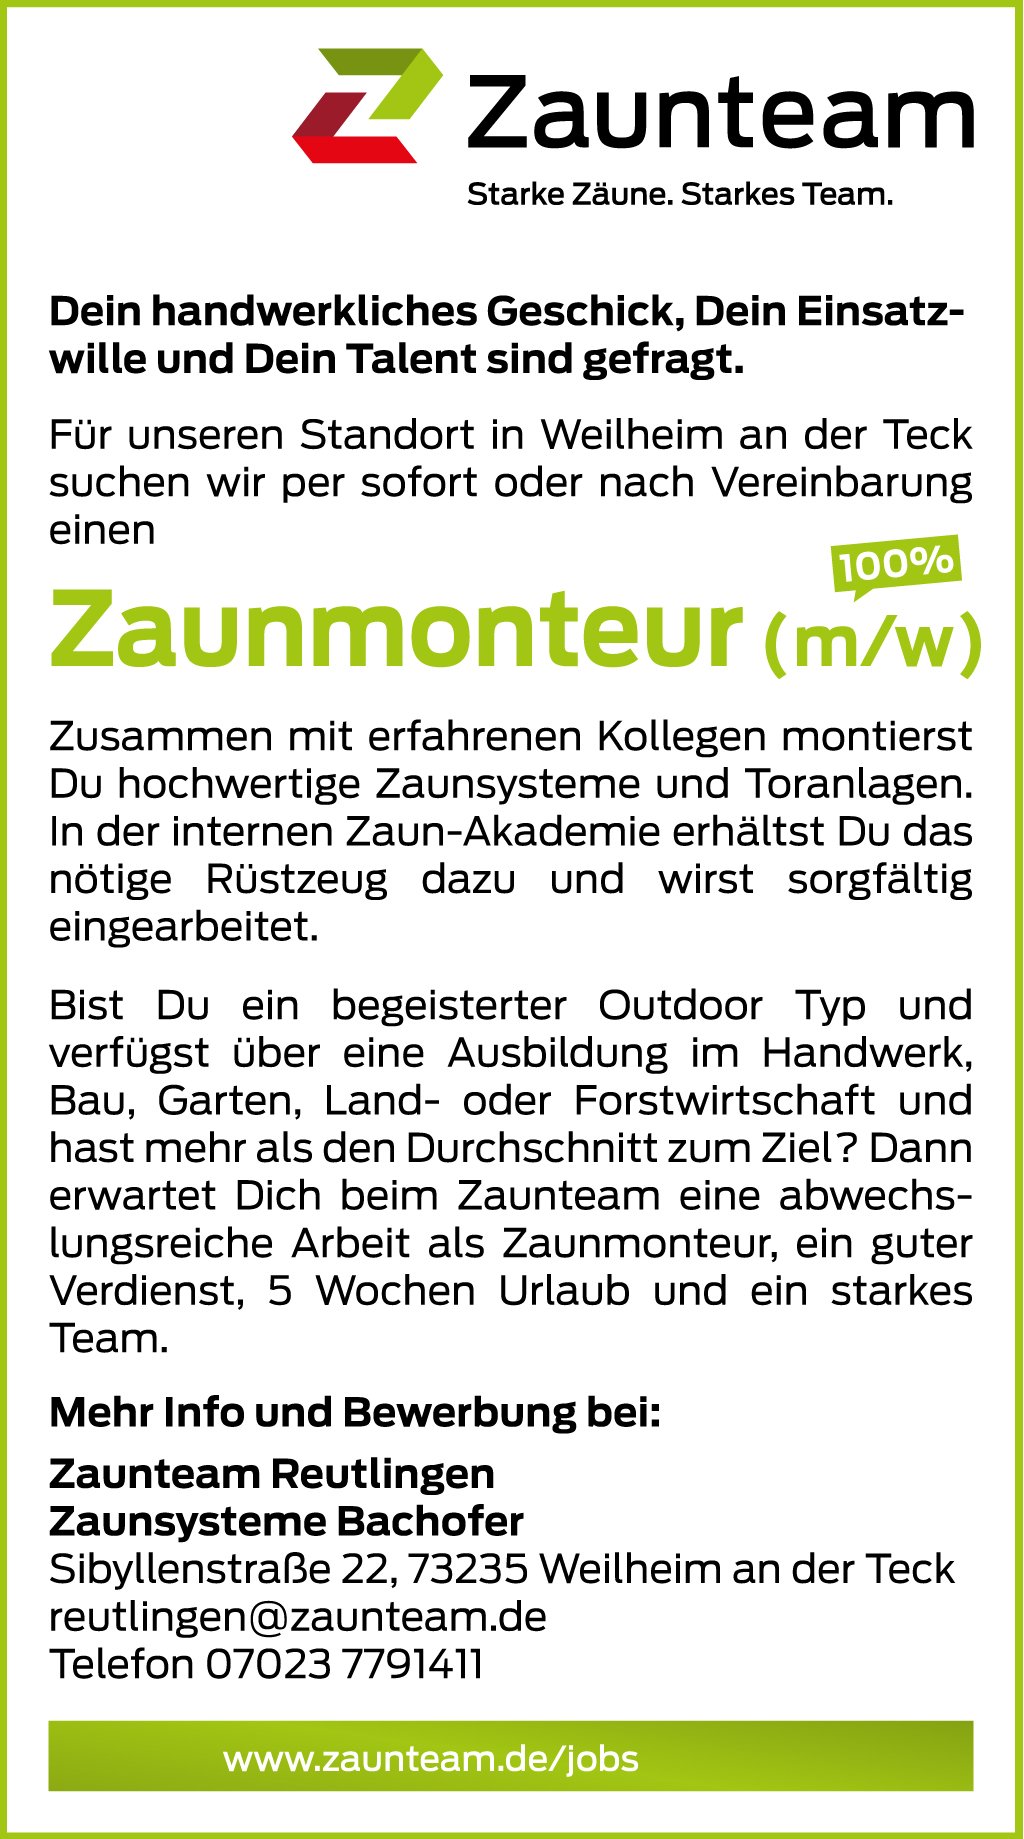 Zaunteam-Reutlingen_Stellenanzeige-Zaunmonteur_2019.jpg